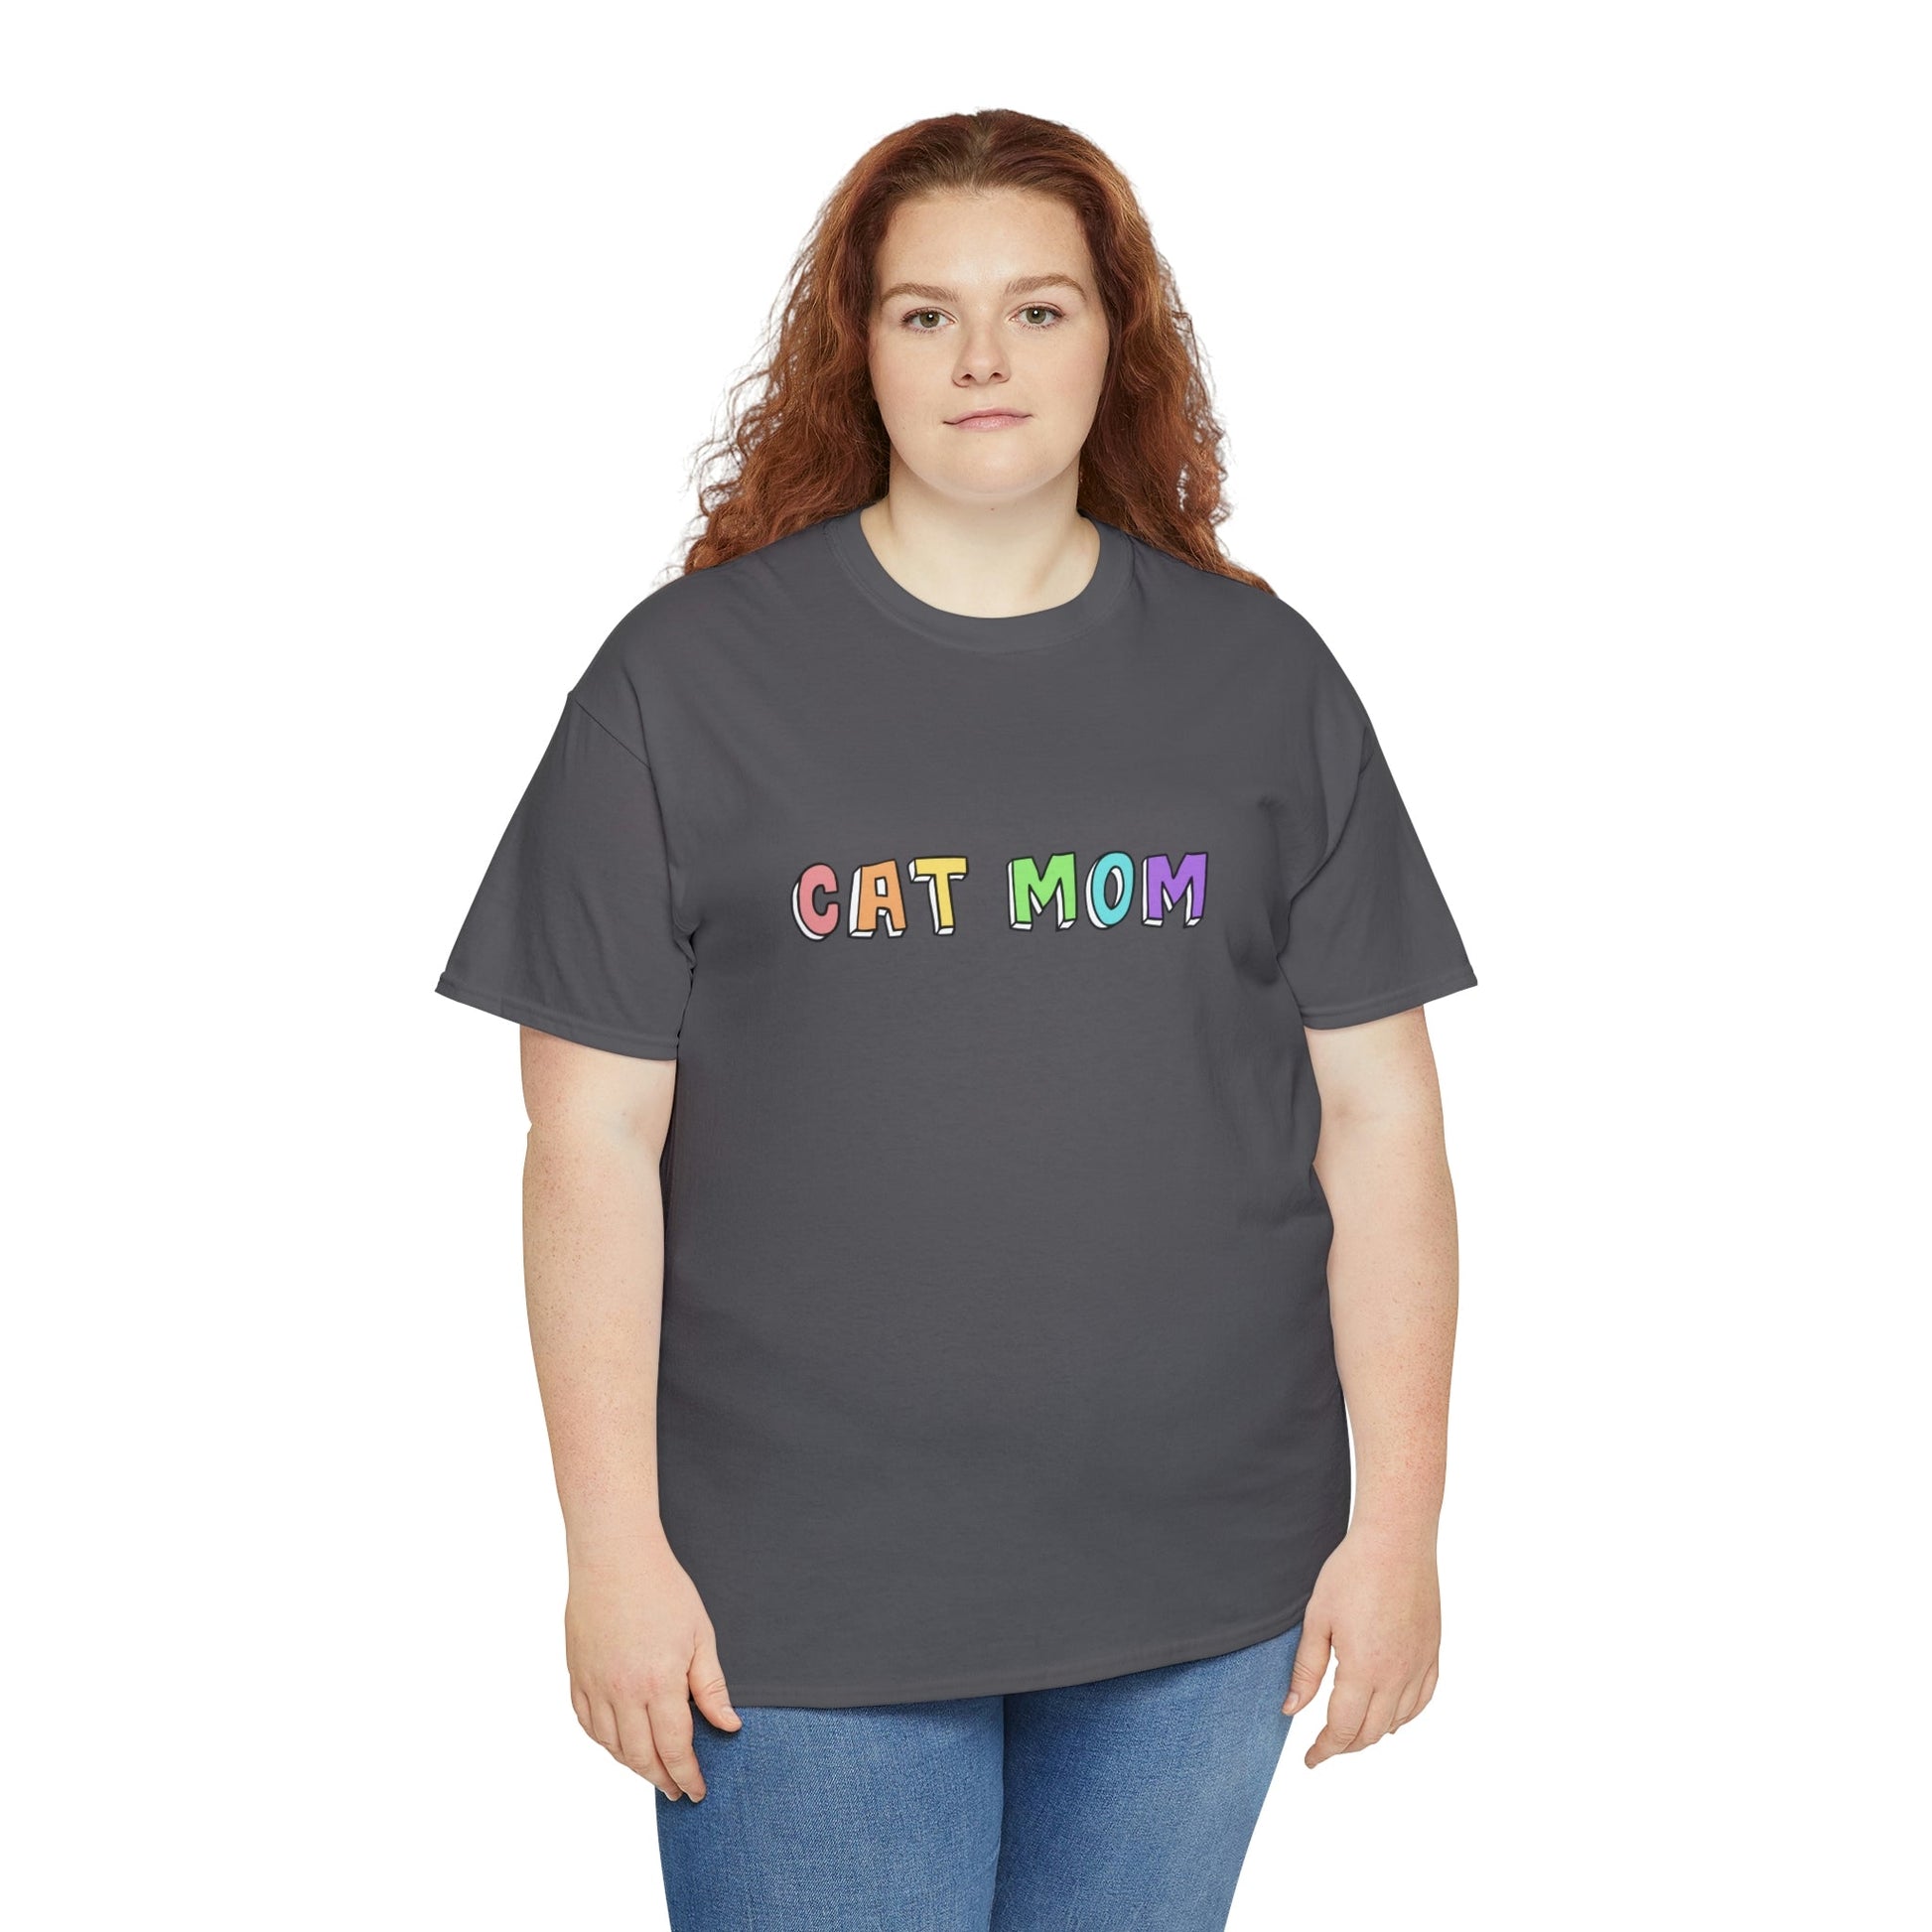 Cat Mom | Text Tees - Detezi Designs-11537270261636640485